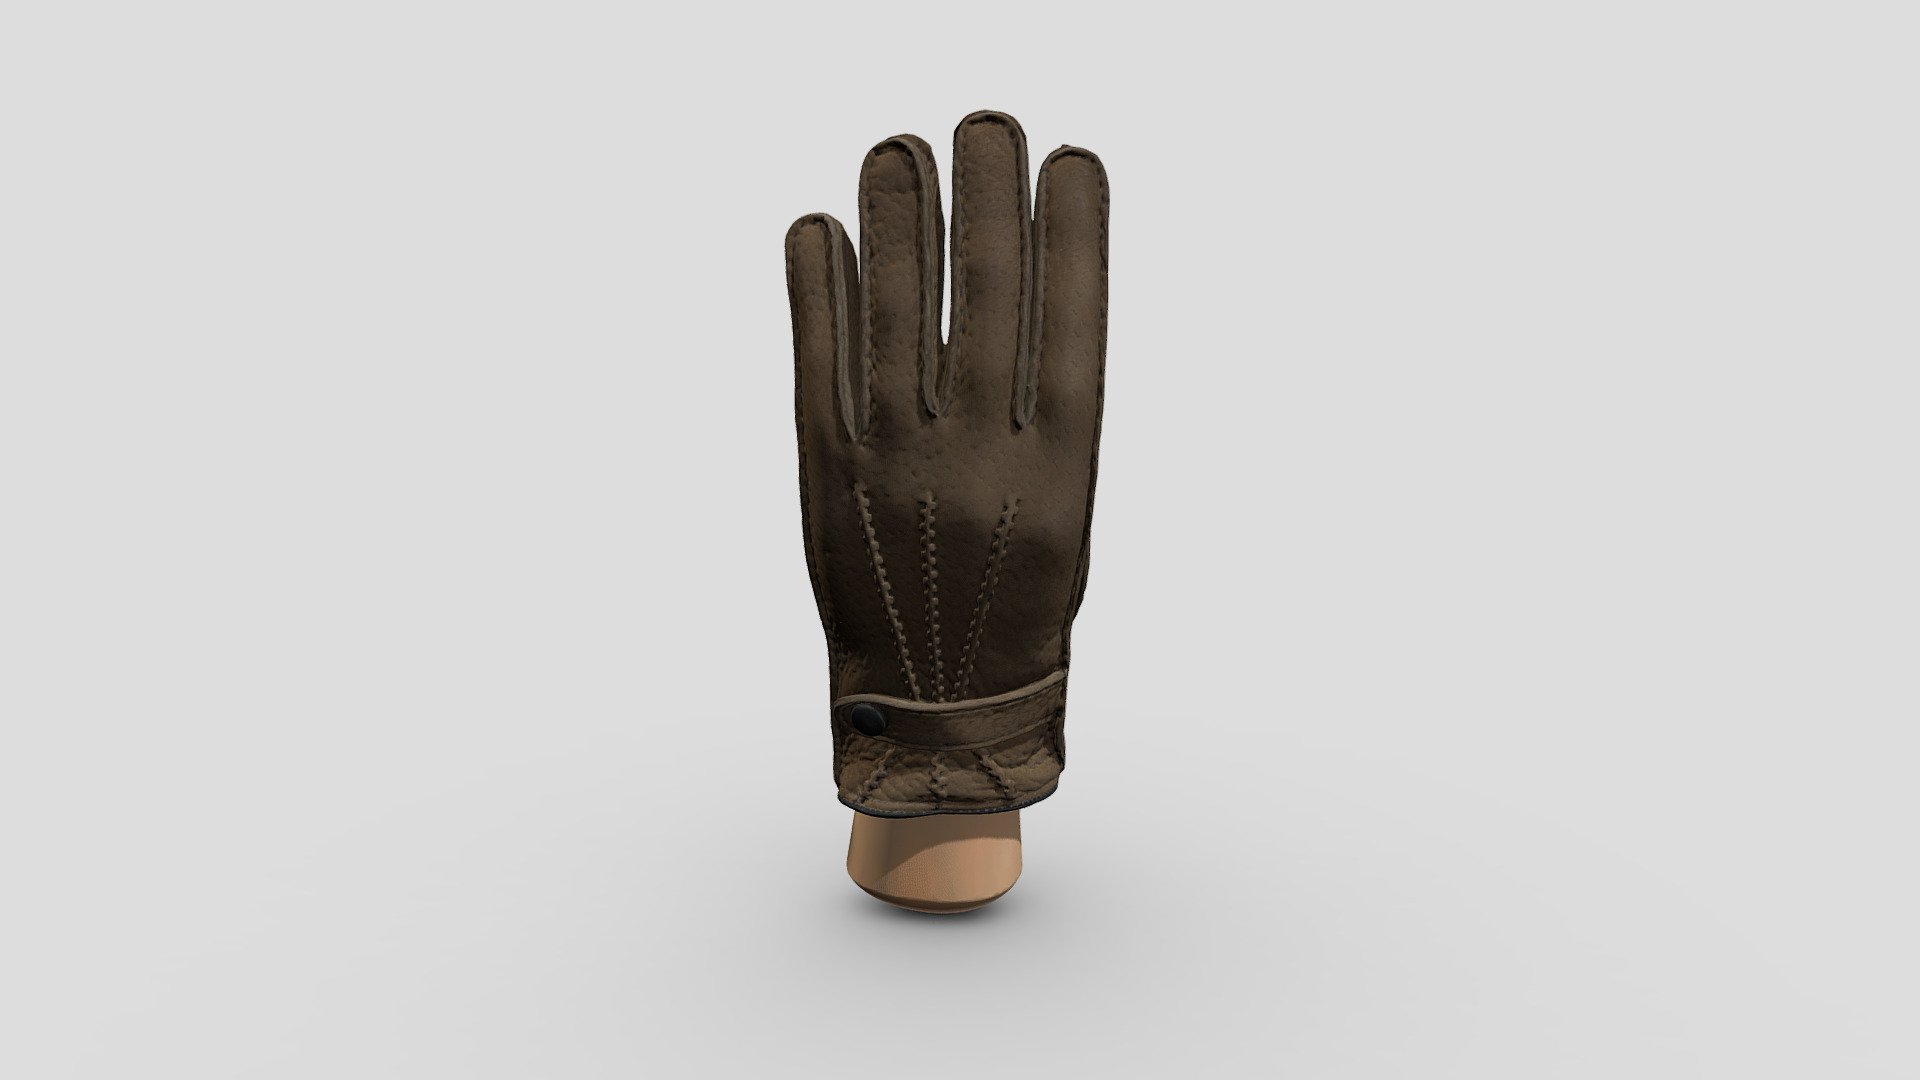 Glove in Peccary Upper skin & Cashmir lining - 3D model by affanaruci 3d model